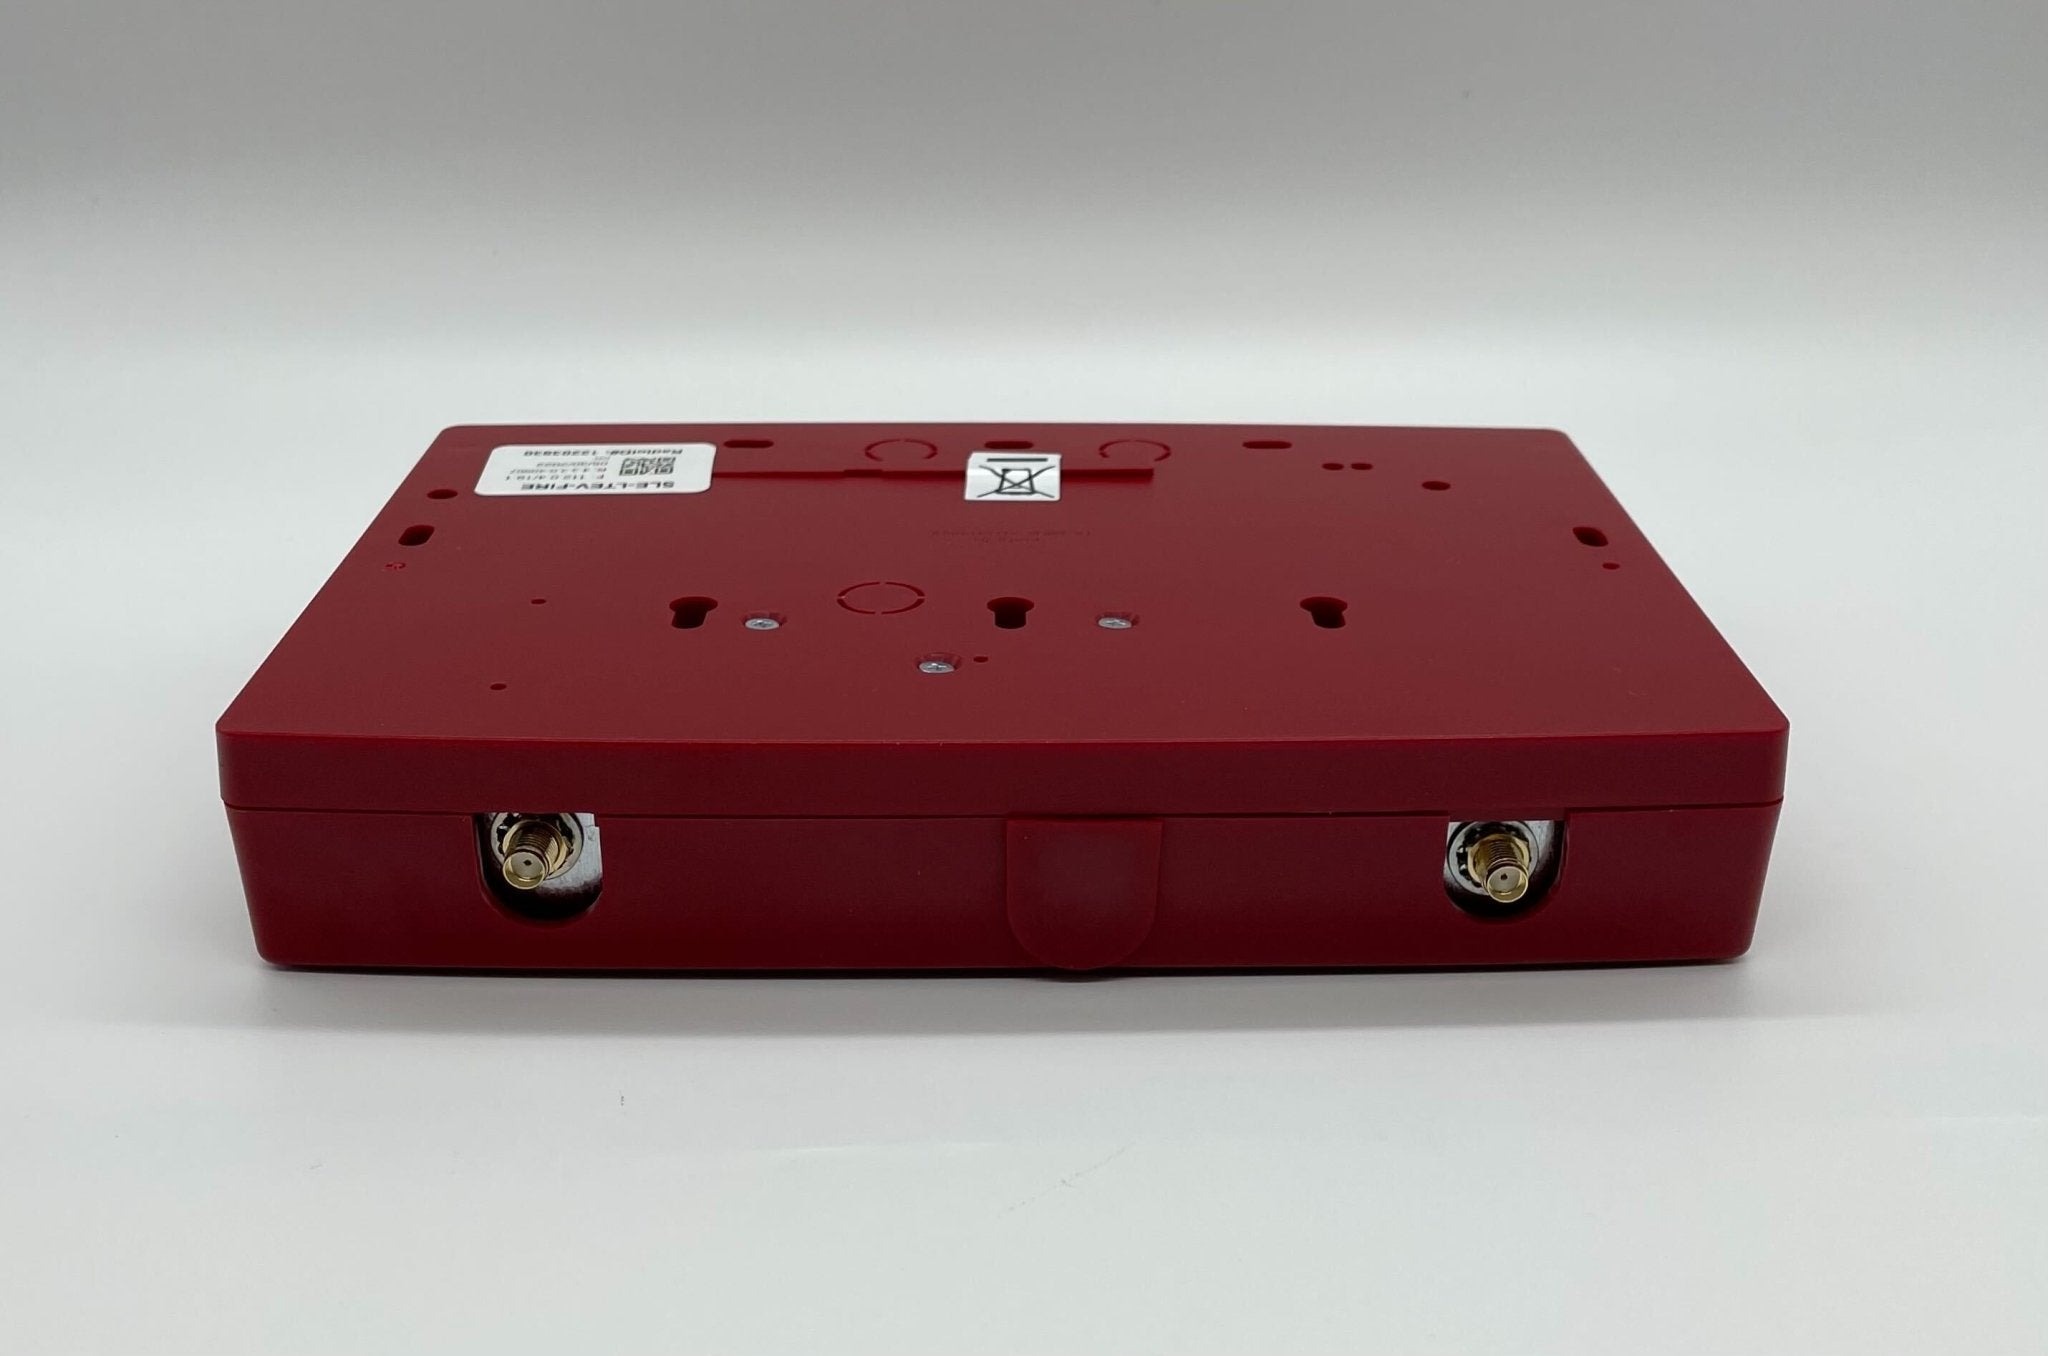 Napco SLE-LTEV-FIRE - The Fire Alarm Supplier